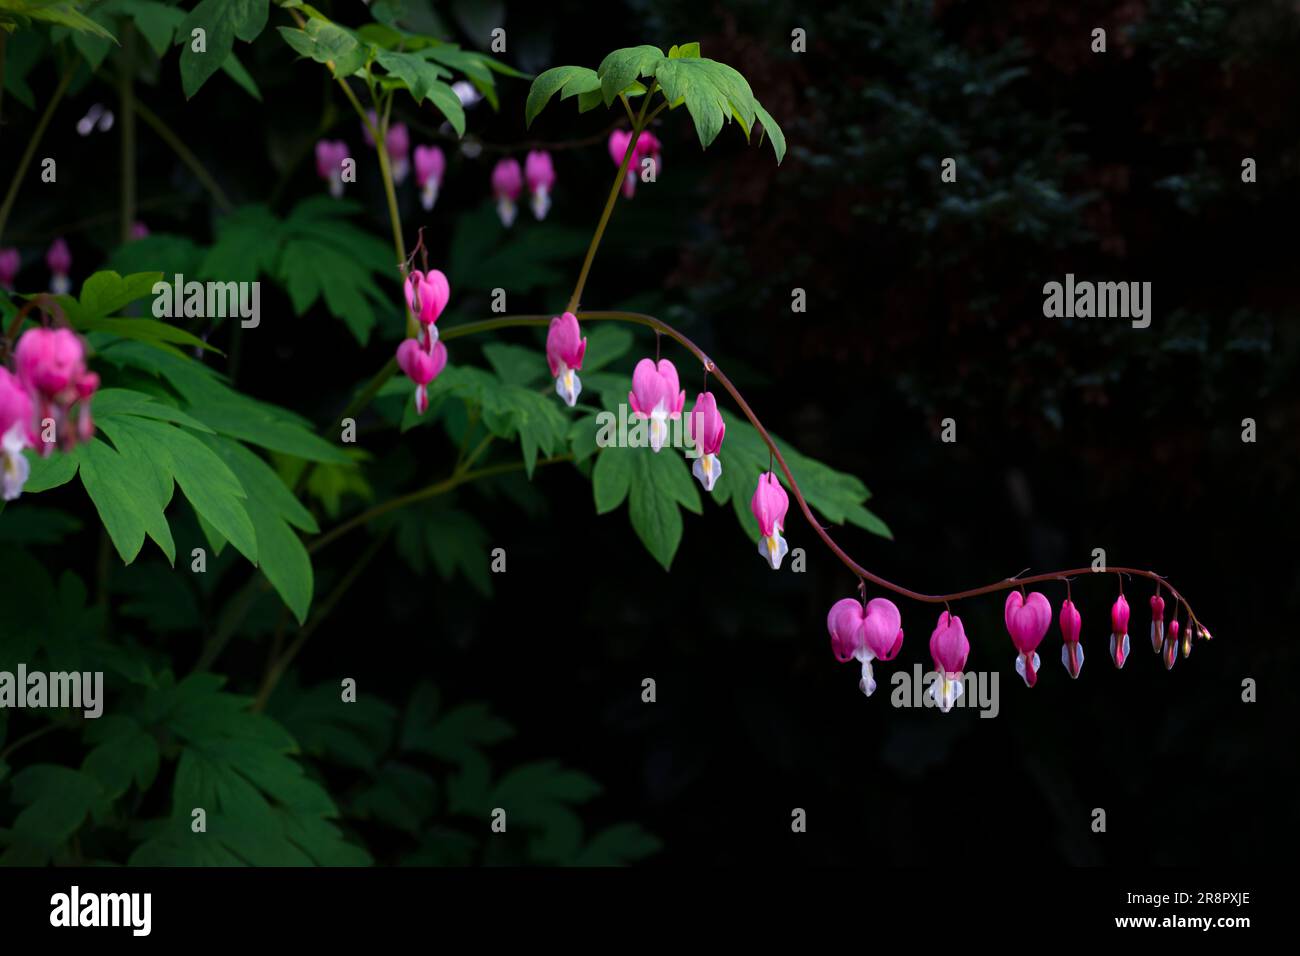 Pflanze Lamprocapnos (Tränen Herz - Flammendes Herz - Marias Herz) muss an einem schattigen Ort sein. Makroaufnahme von rosa Blumen gegen dunkle Nadelbäume im Ba Stockfoto